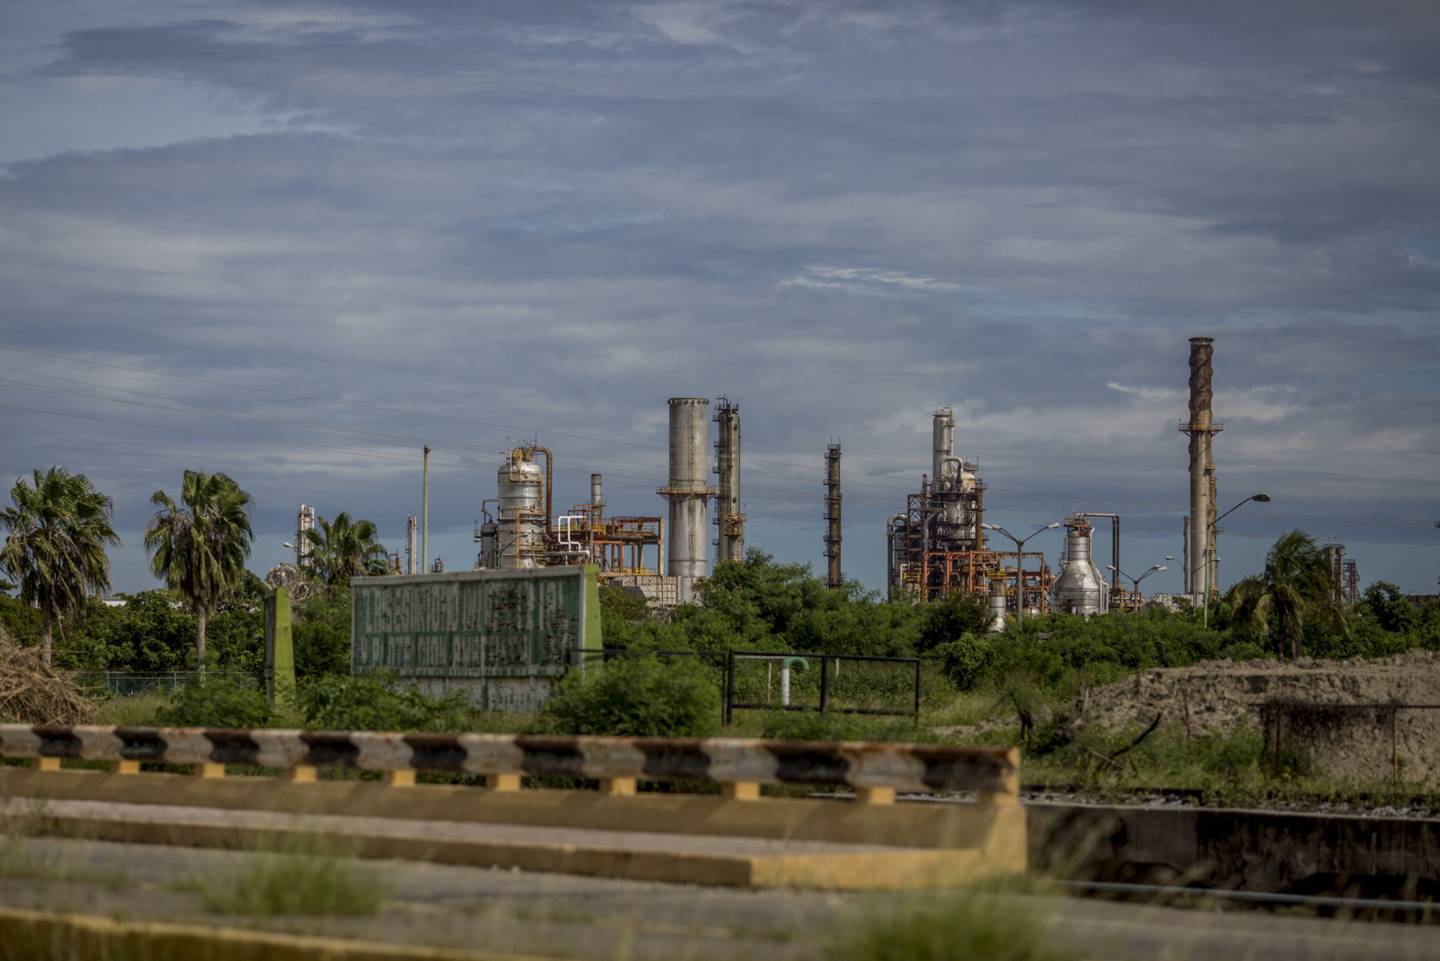 La refinería Salina Cruz de Petróleos Mexicanos (Pemex) Salina Cruz en el estado de Oaxaca, México.